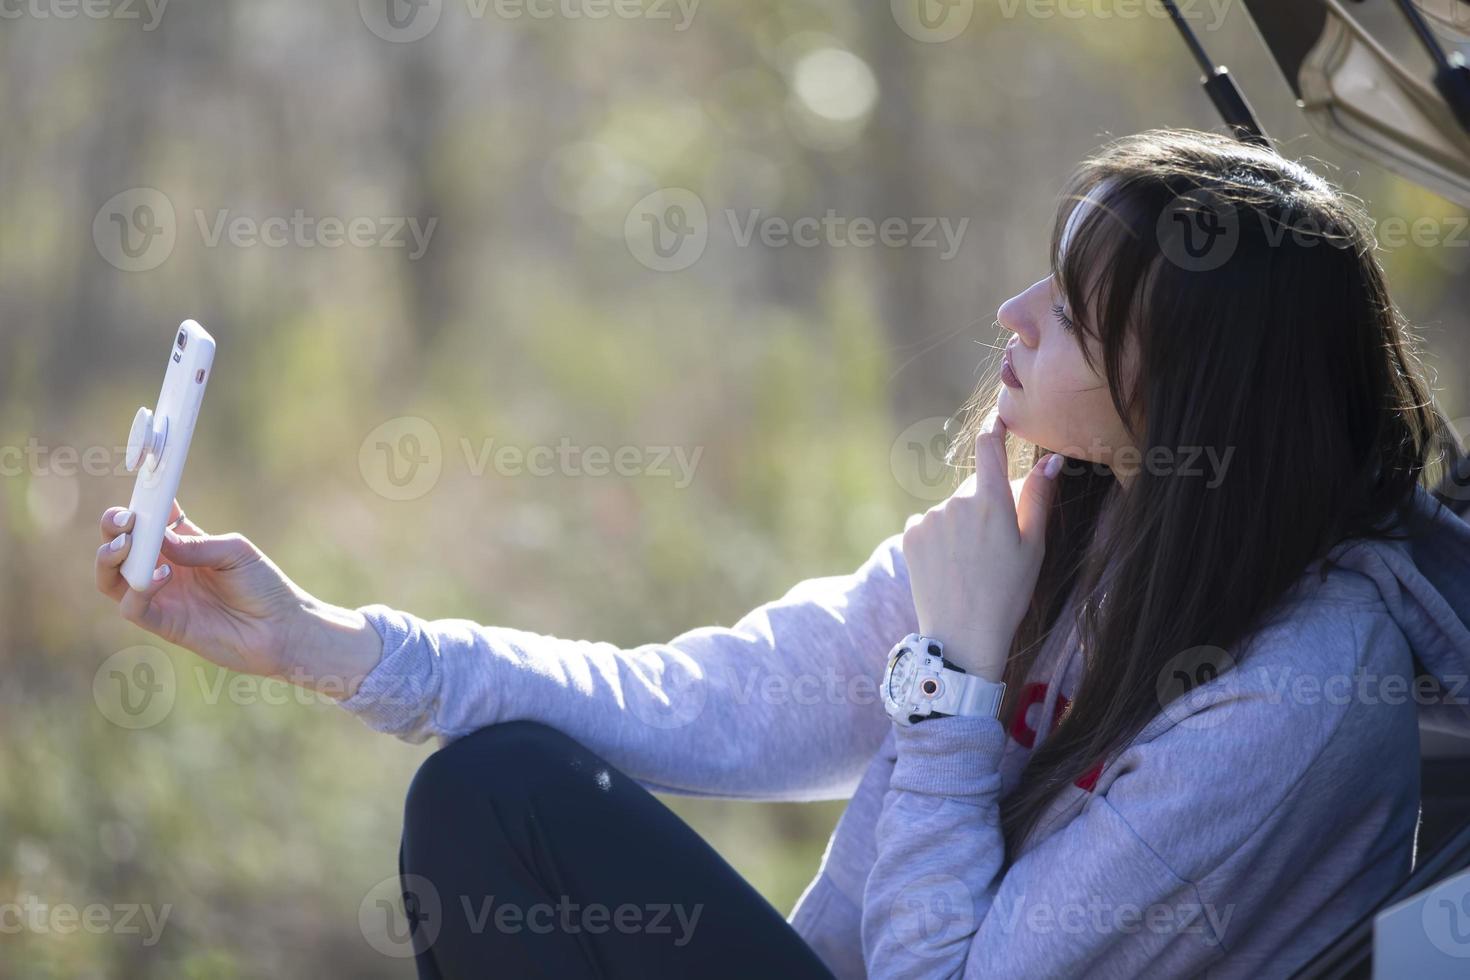 retrato de uma linda garota ao ar livre que usa um smartphone, compartilha conteúdo digital entre si e gosta de tirar uma foto de selfie.